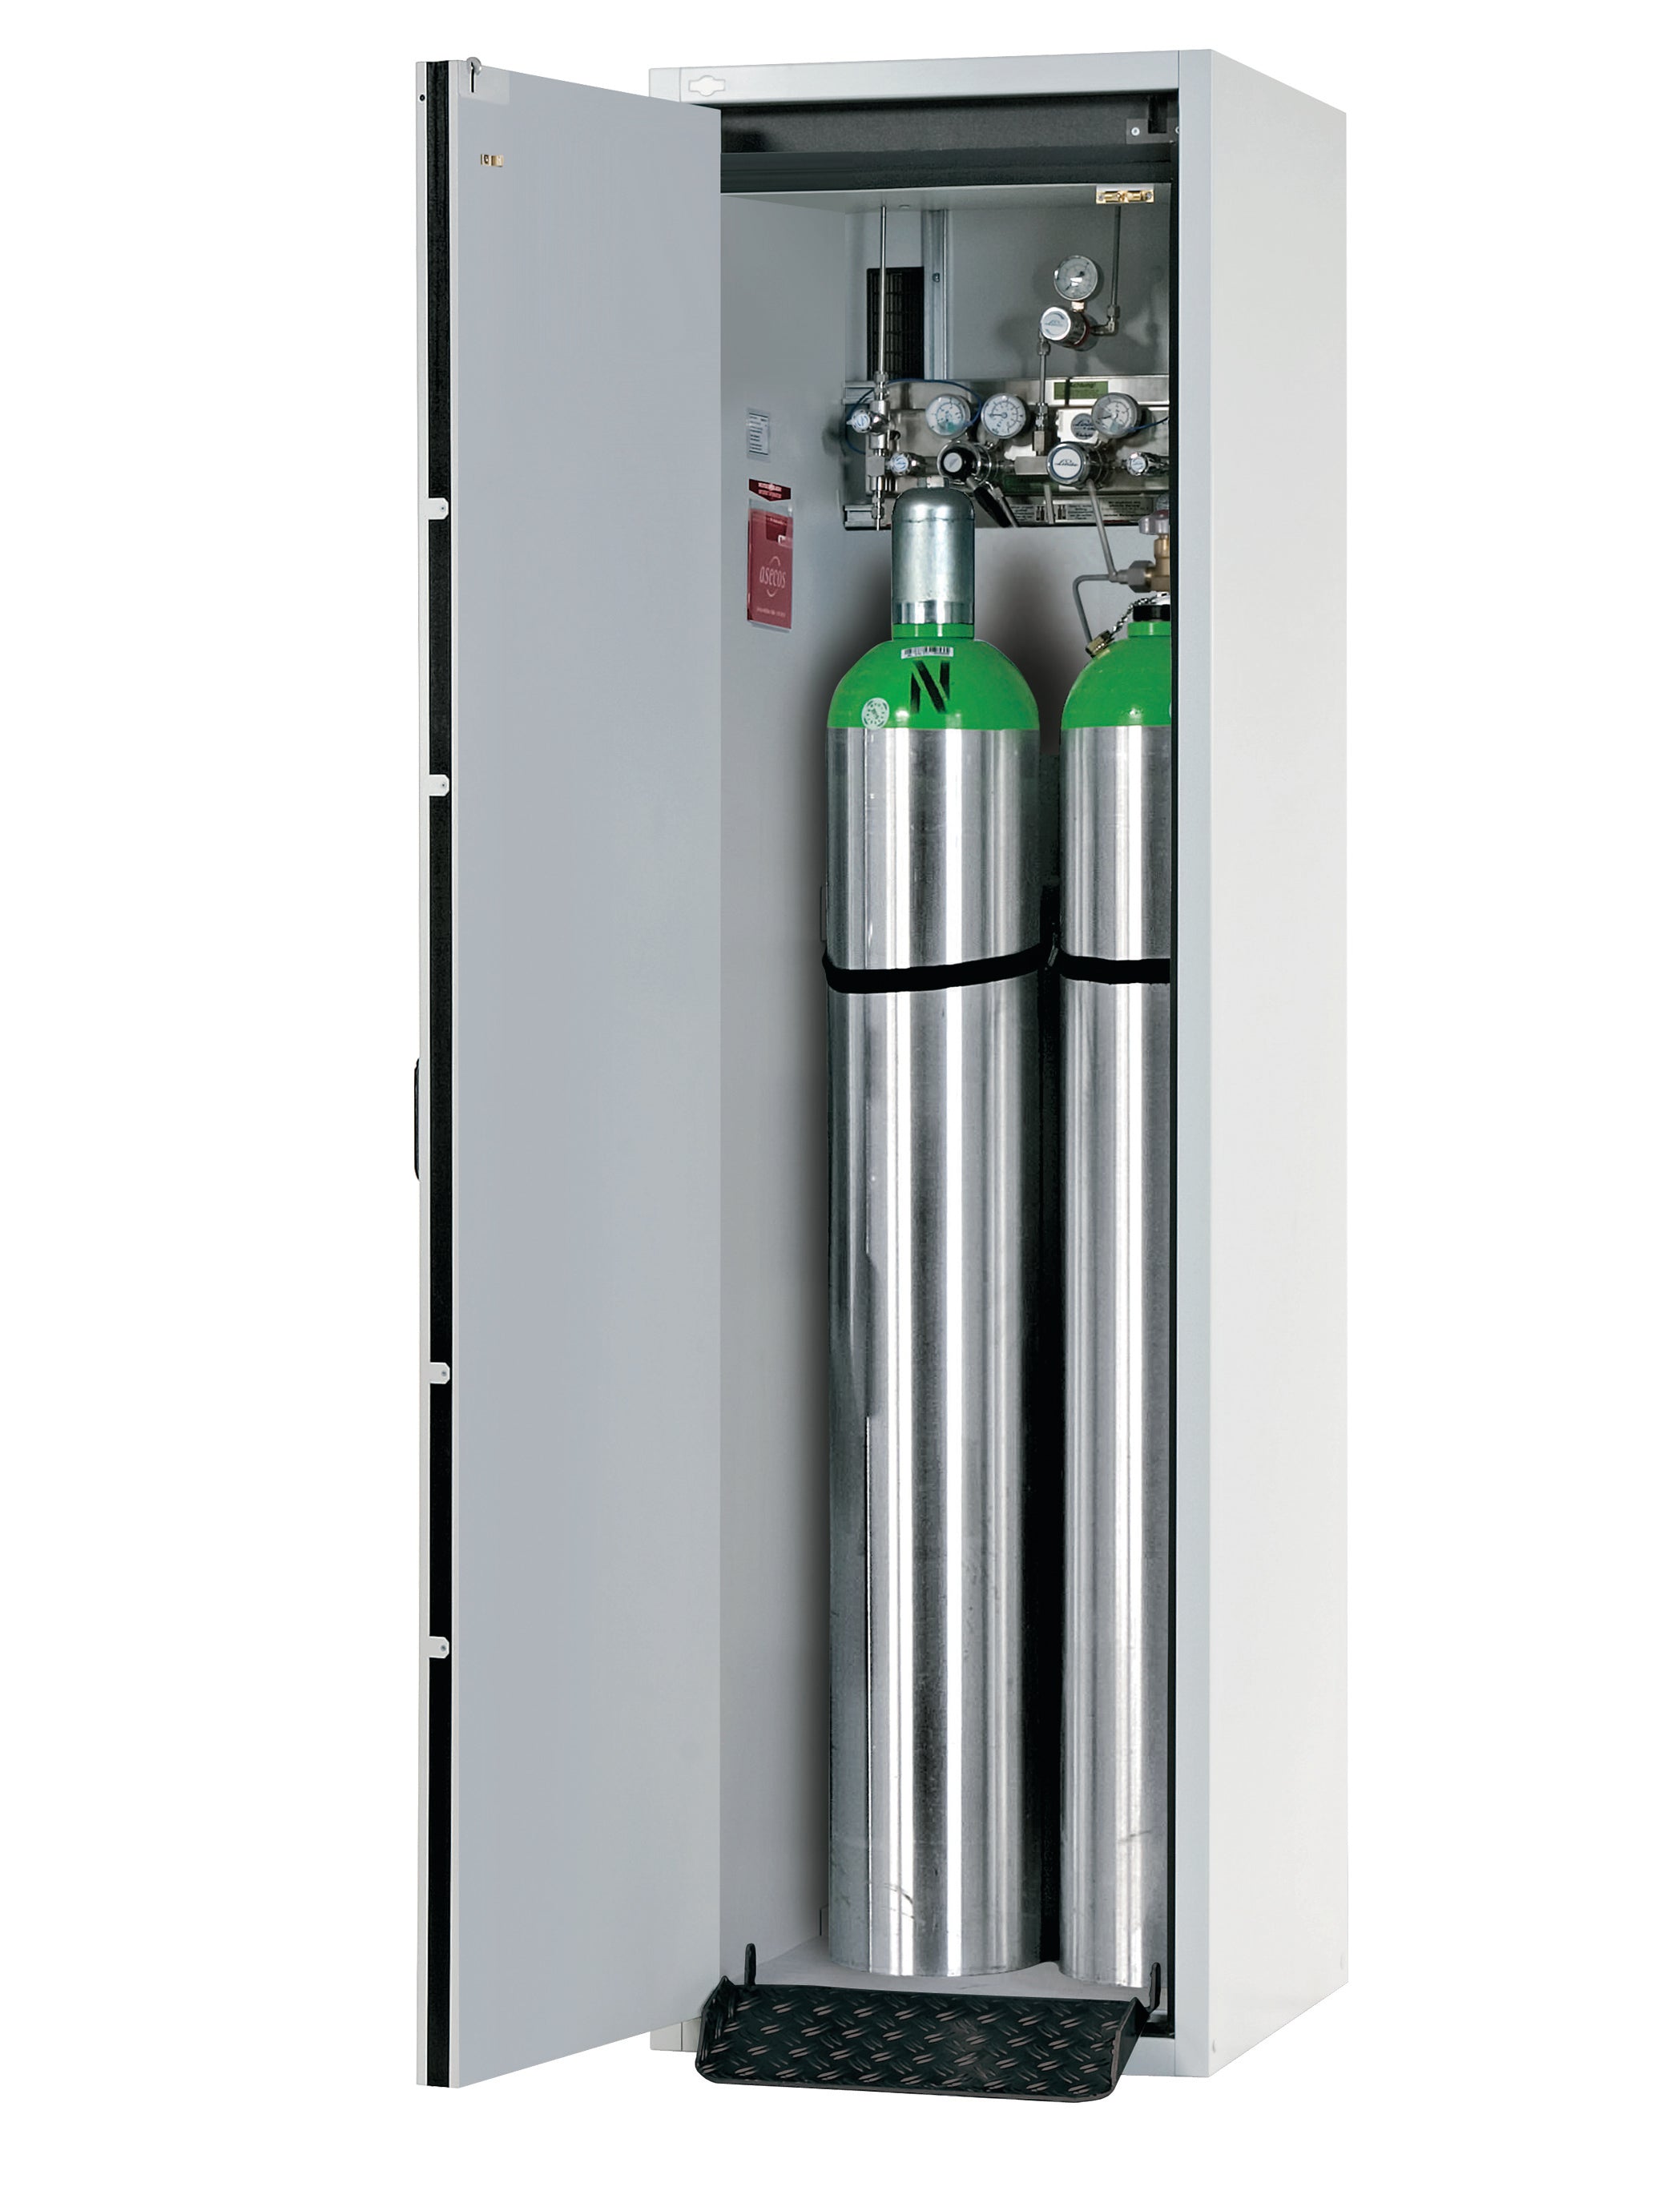 Typ 30 Druckgasflaschenschrank G-CLASSIC-30 Modell G30.205.060 in lichtgrau RAL 7035 mit Standardinneneinrichtung für 2x Druckgasflaschen à  50 Liter